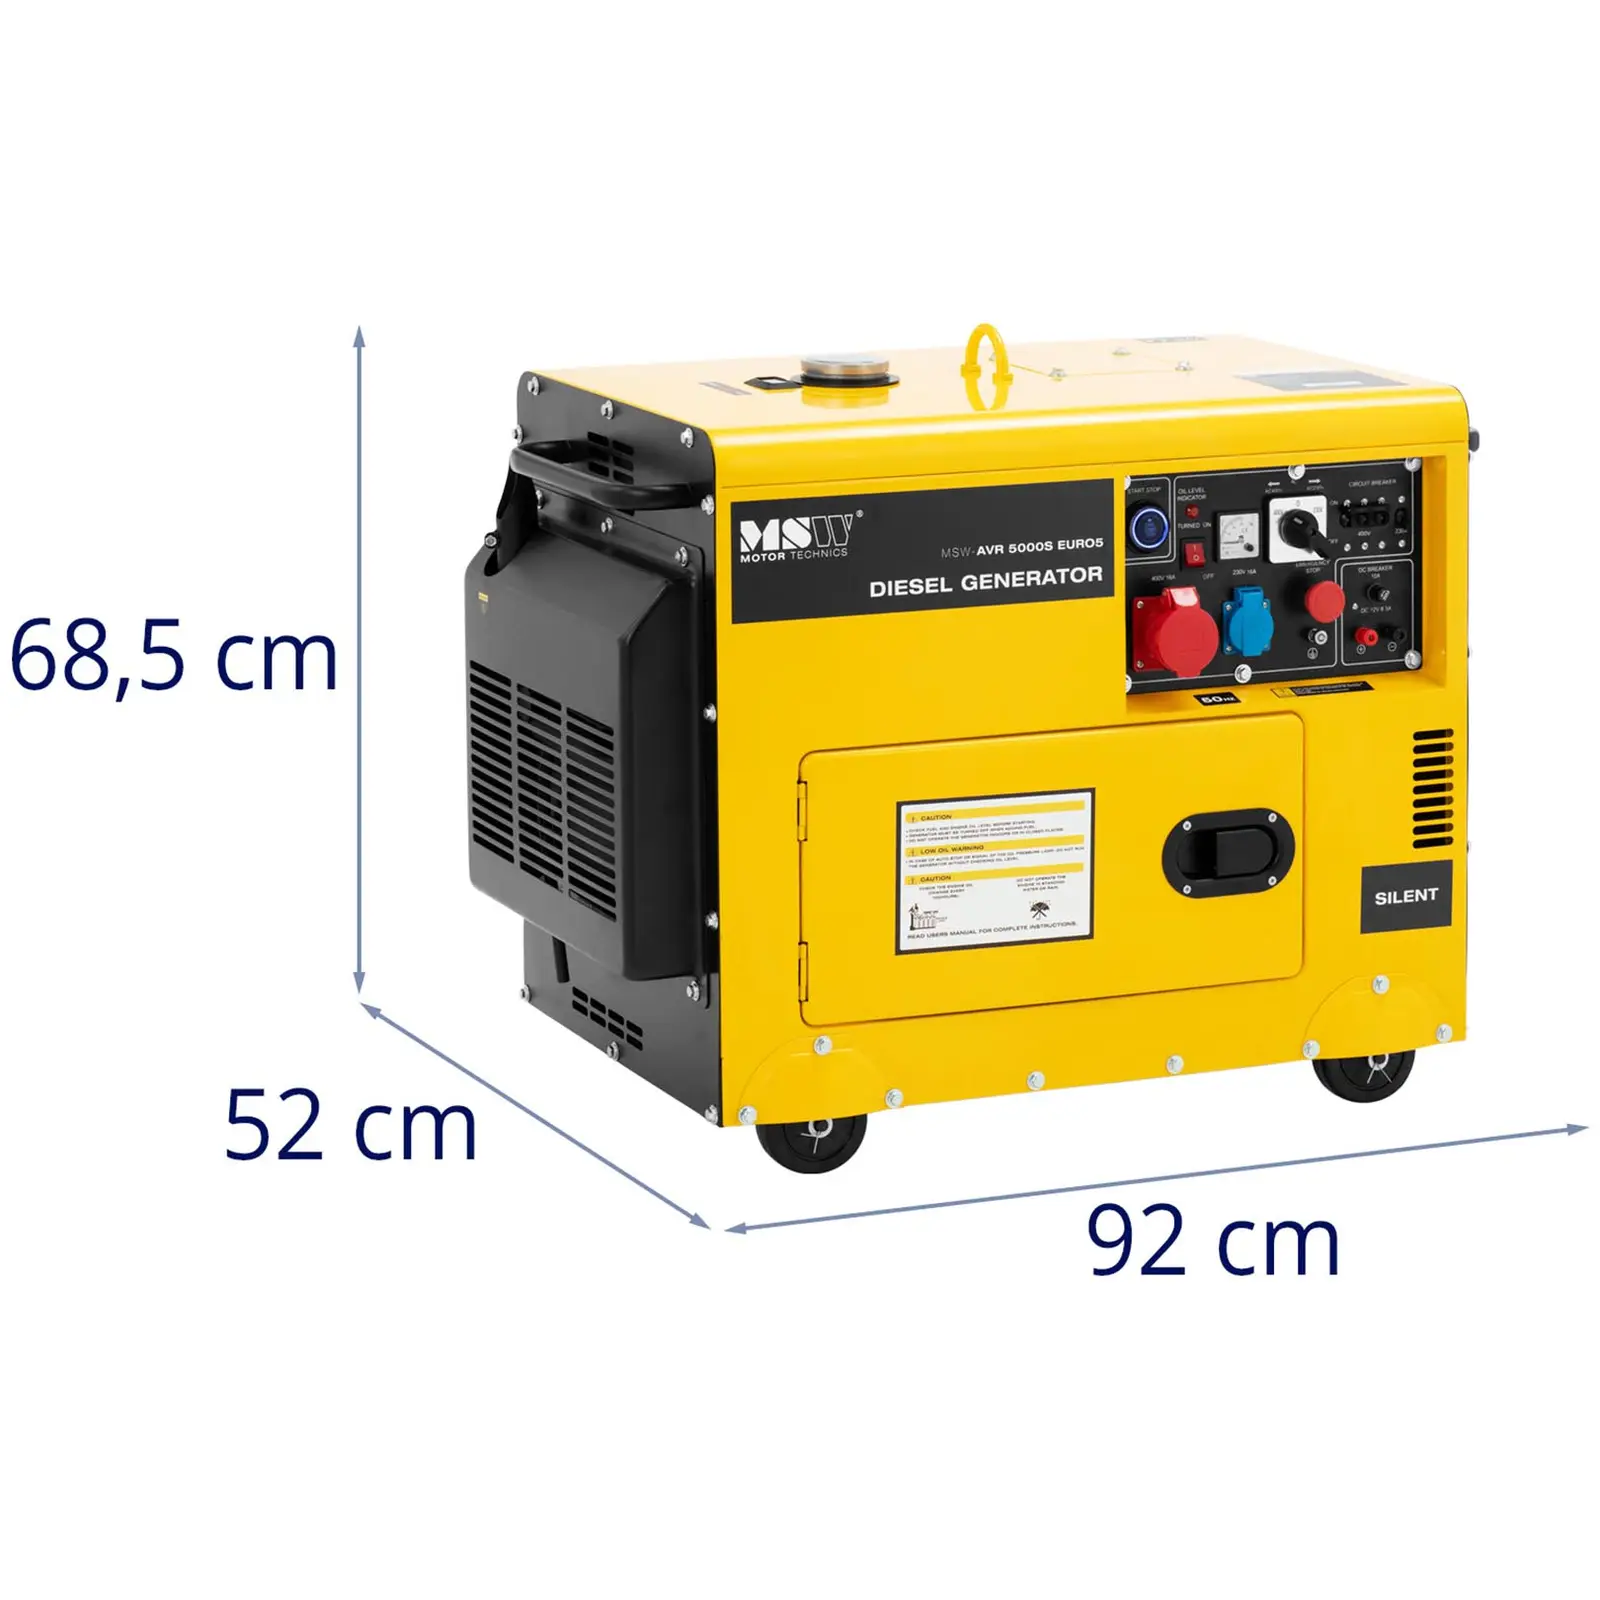 Diesel Generator - 4250 / 5000 W - 16 L - 240/400 V - mobile - AVR - Euro 5